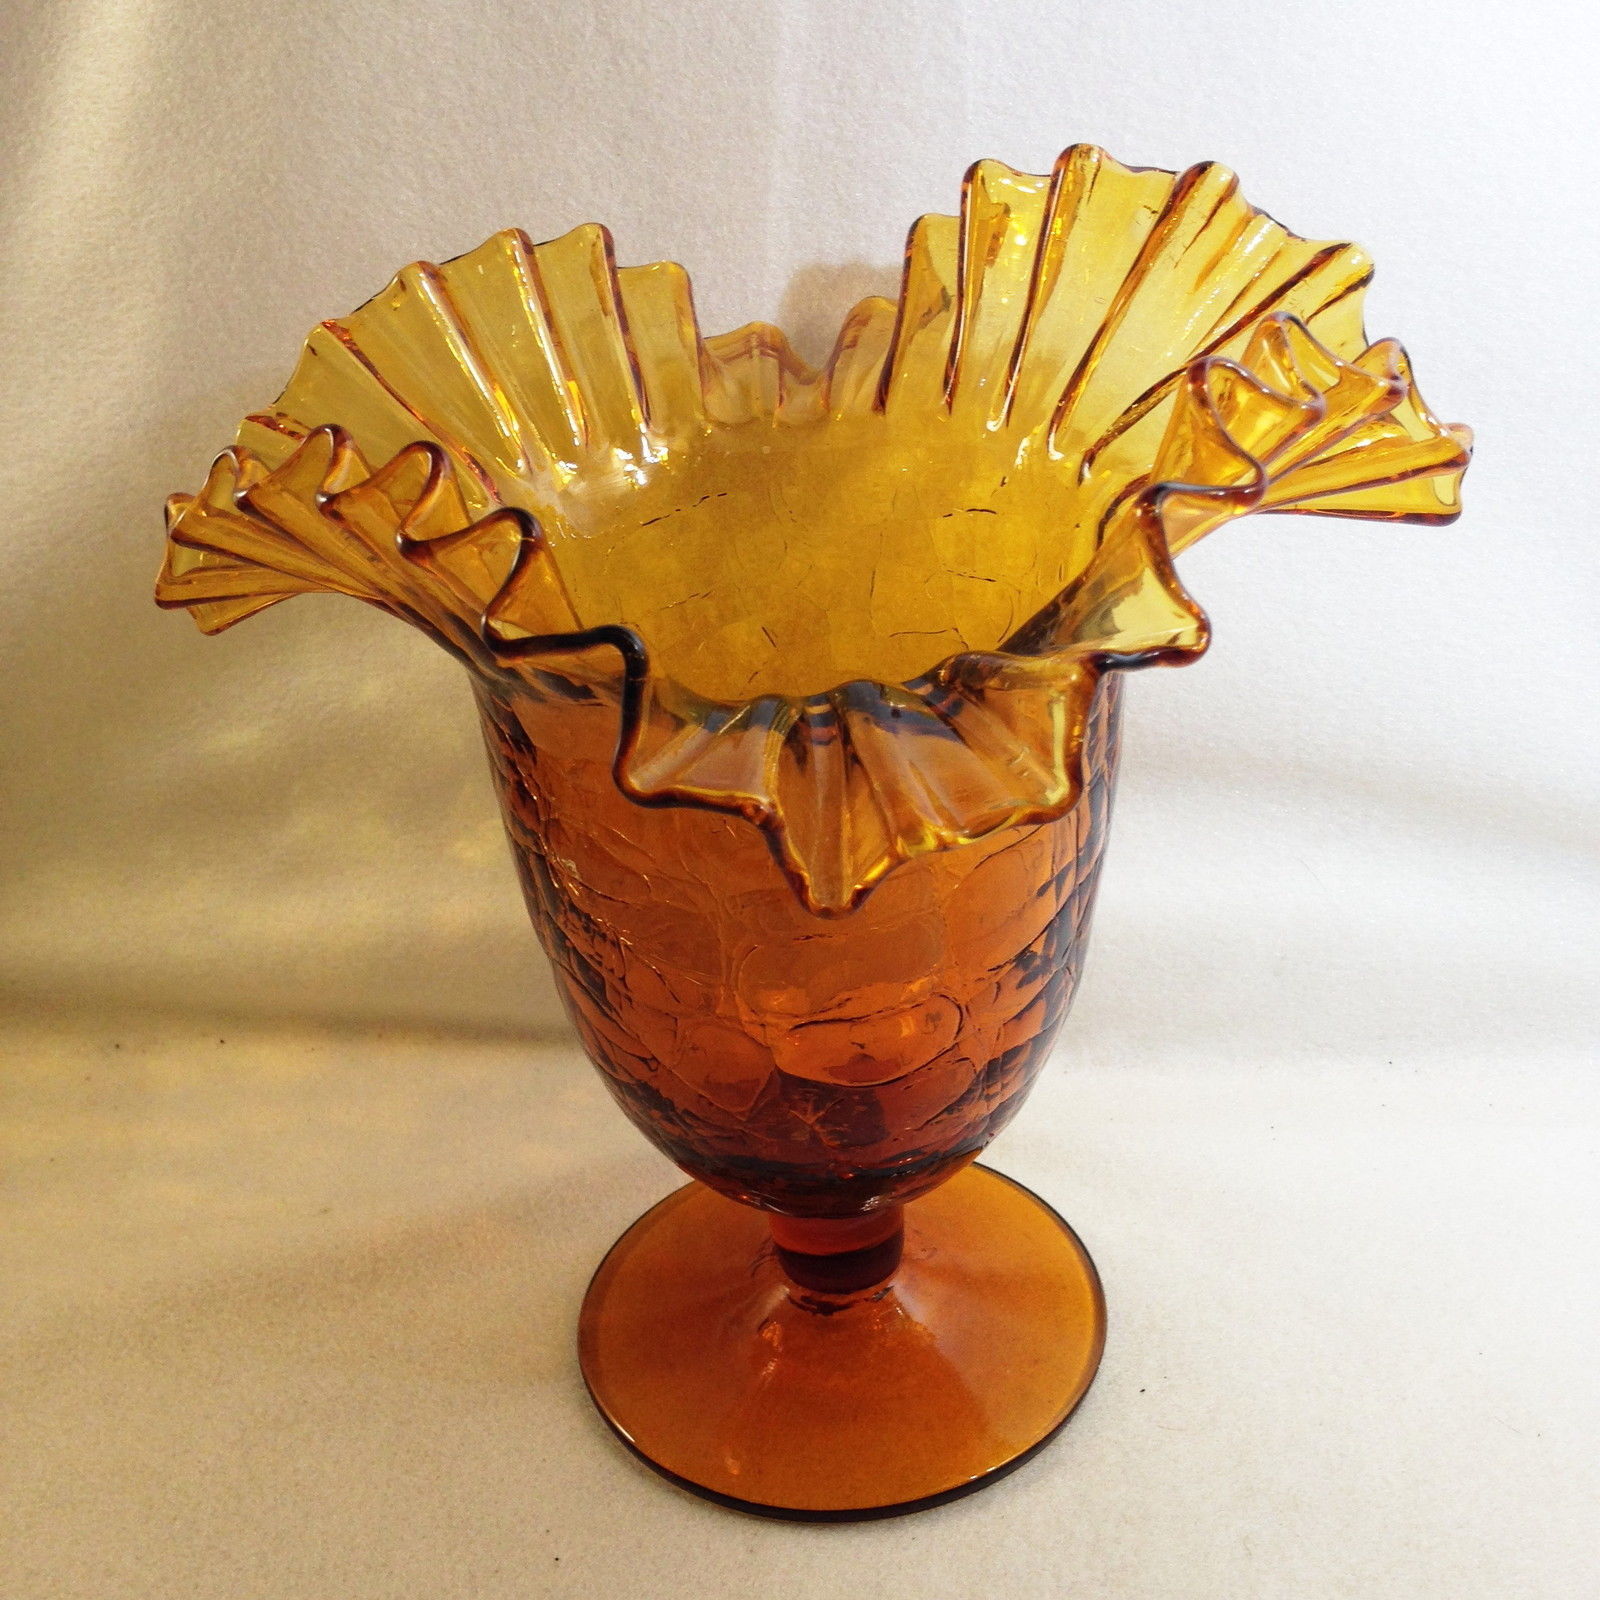 Primary image for Blenko #388 Crackled Amber Ruffled Wide Rim Vase Pedestal Base 8"x 8" 1950